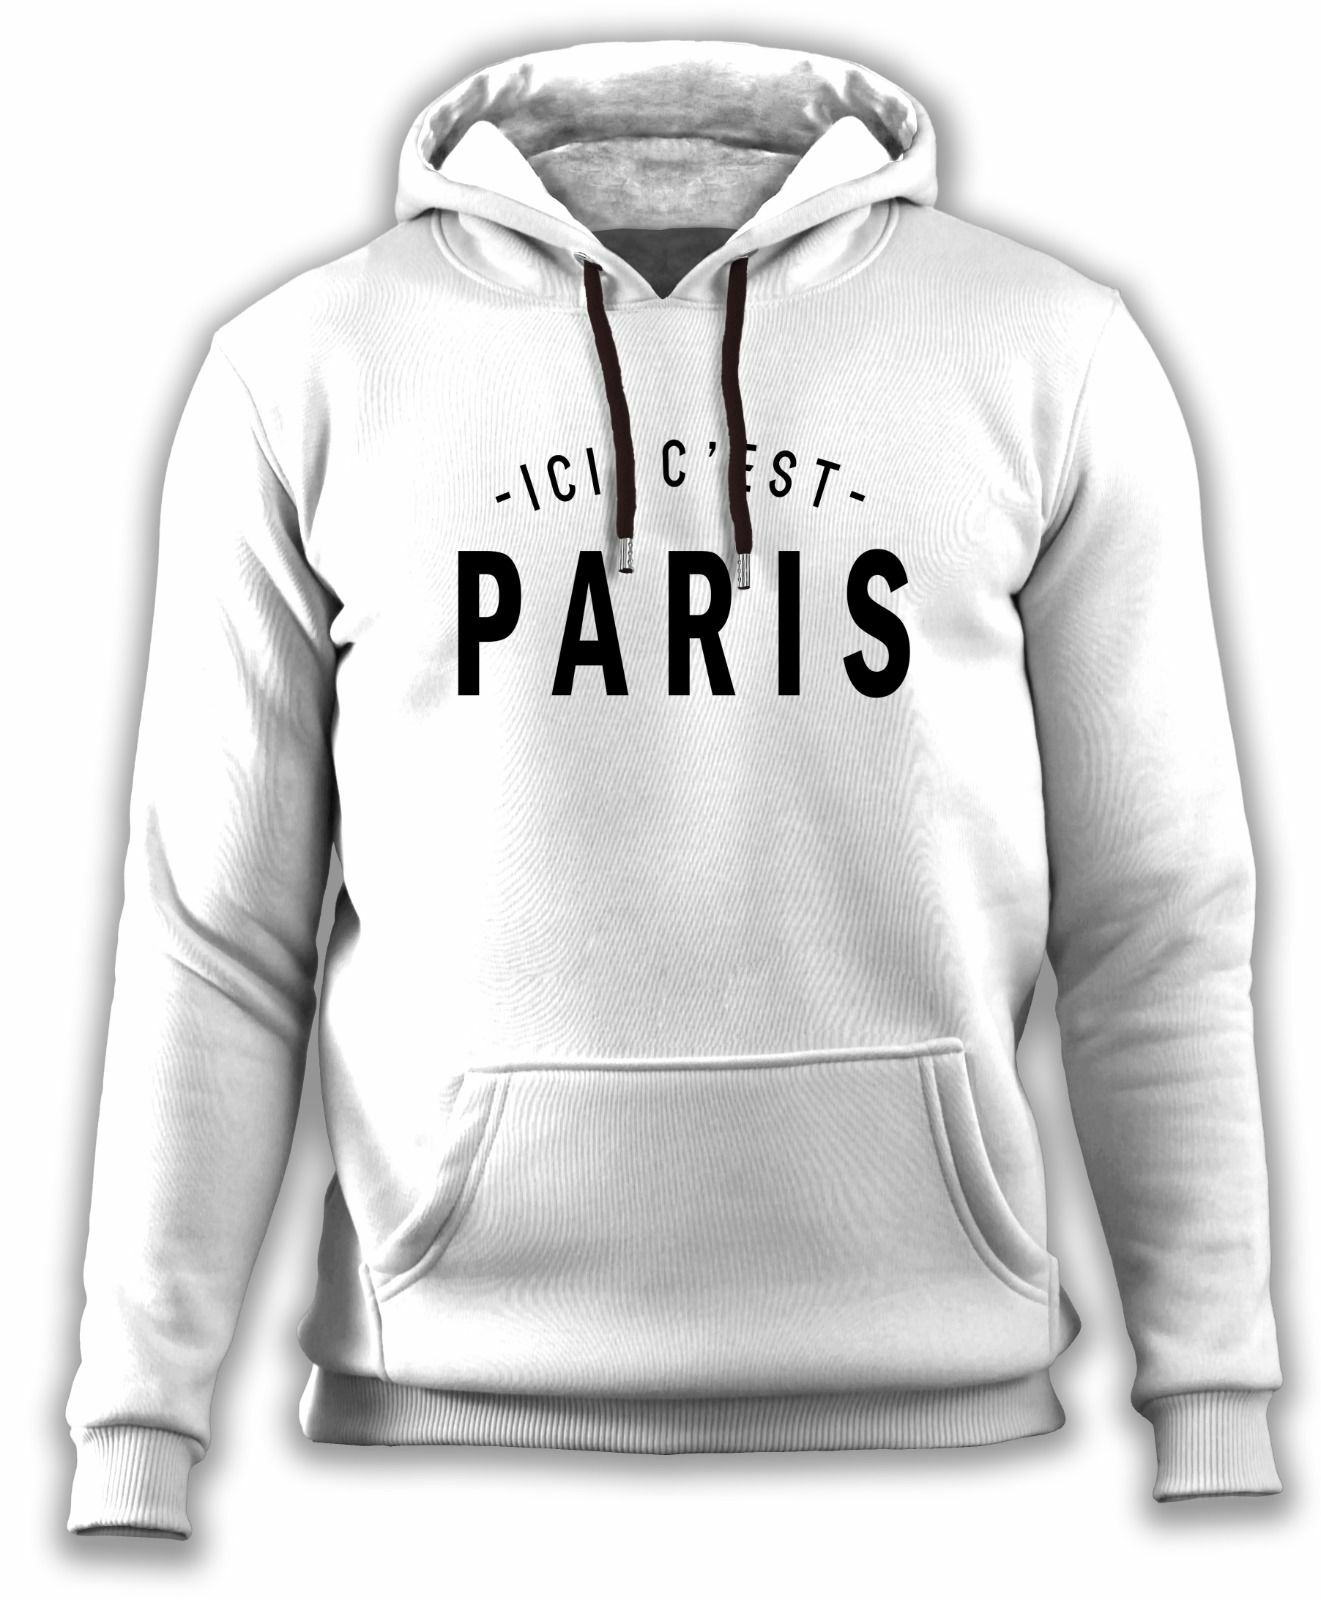 Paris Saint Germain - PSG - Ici C'est Paris Messi Sweatshirt